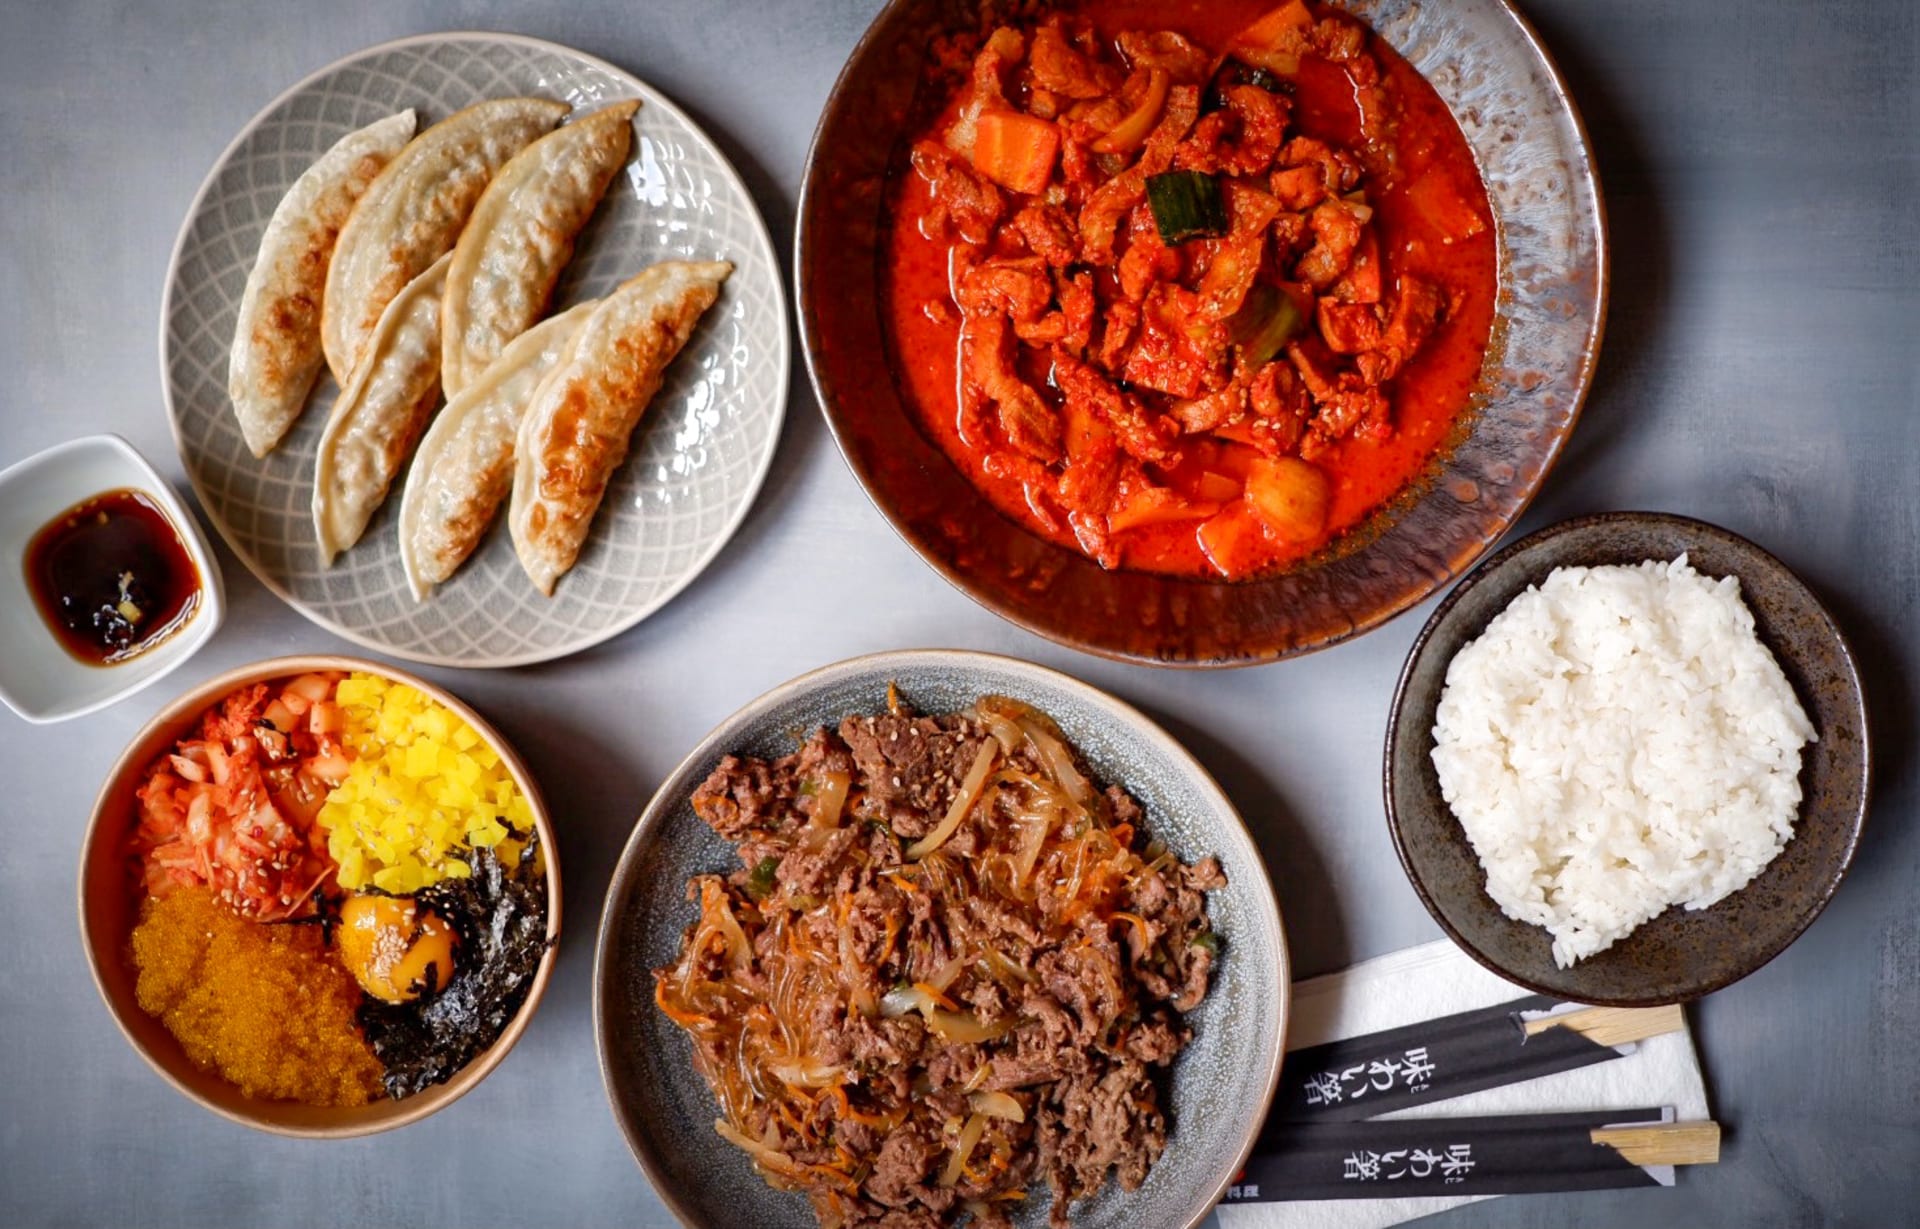 Restaurace Bab rýže vás provede autentickou korejskou kuchyní